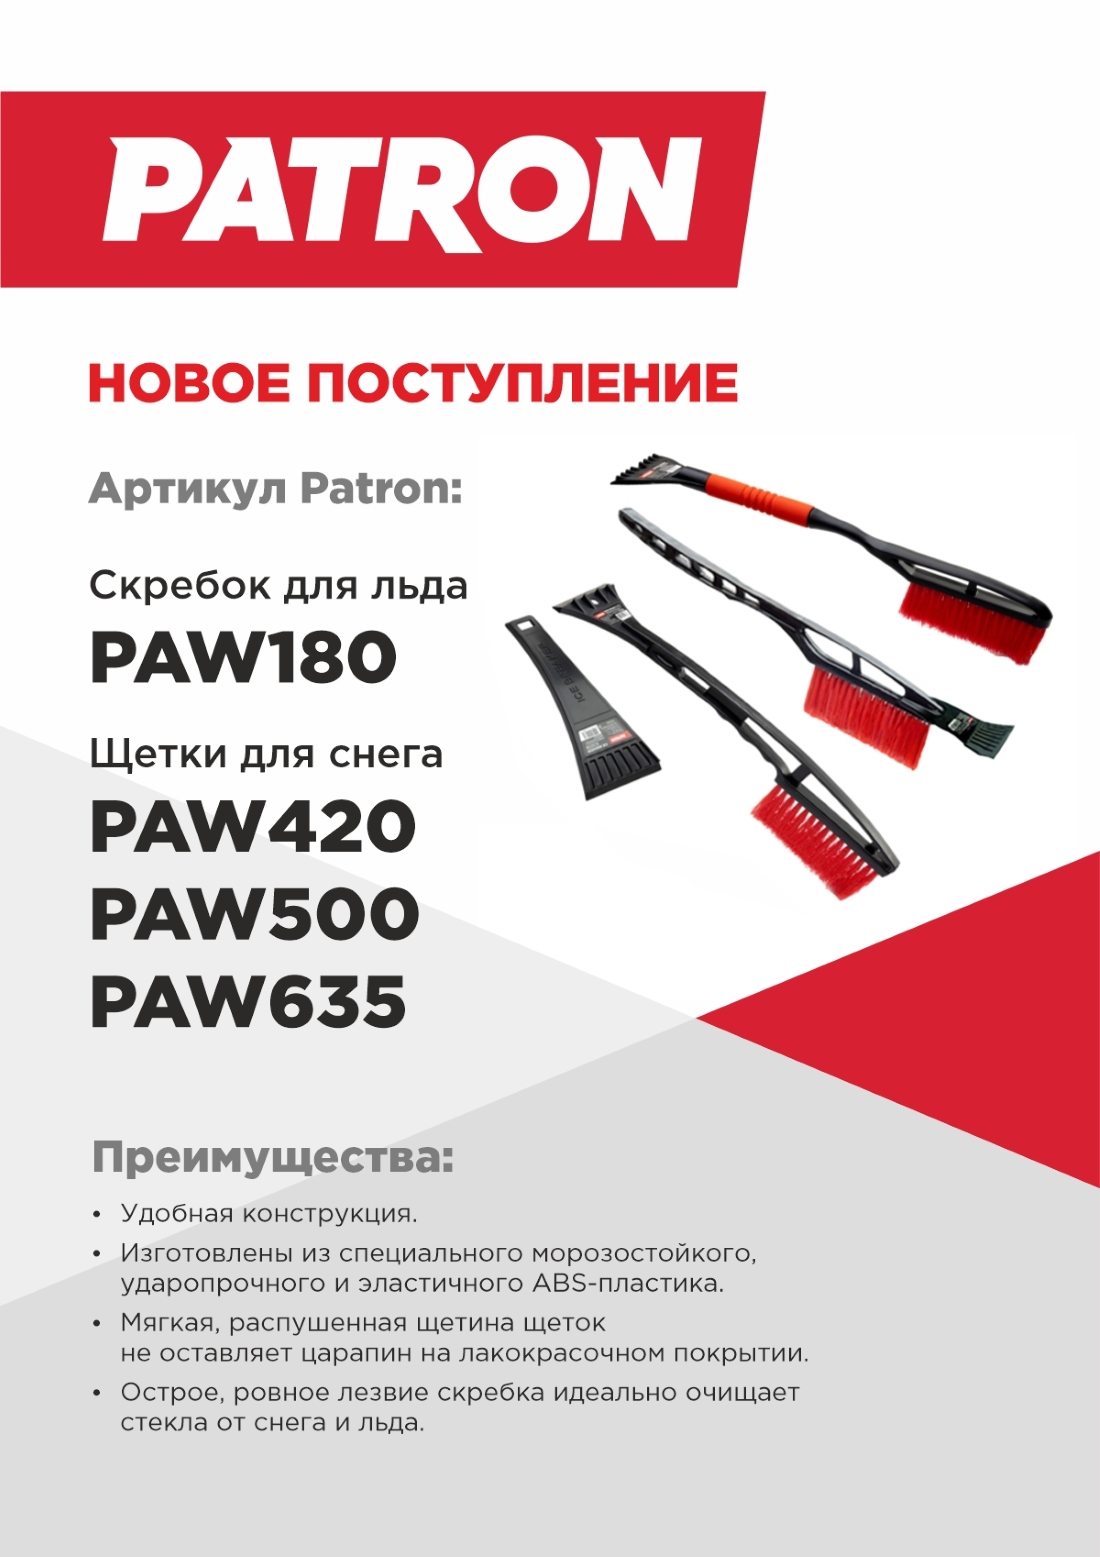 NEW_Patron_PAW_180_PAW500_PAW420_PW635